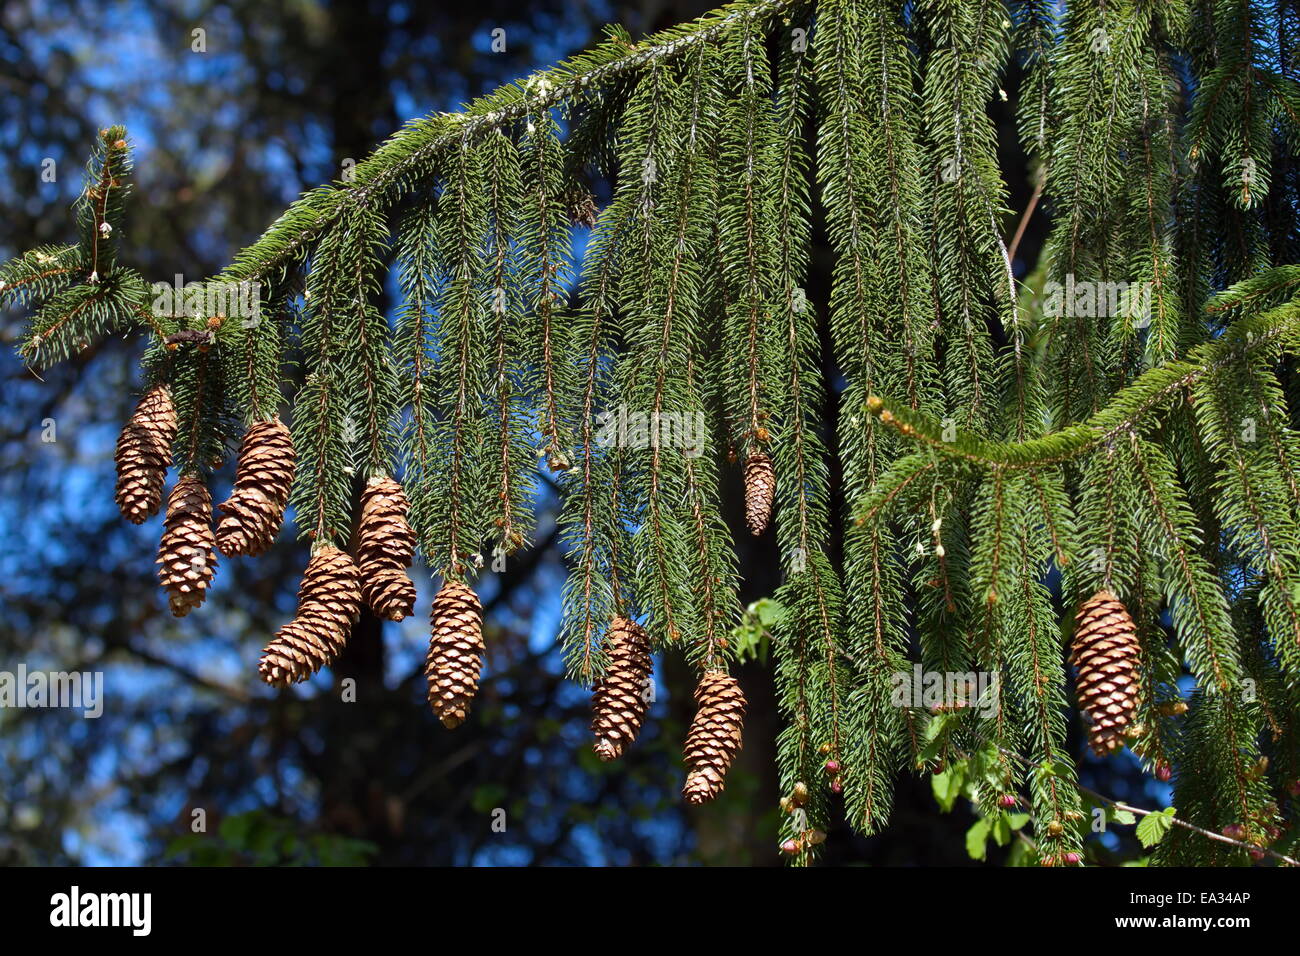 Norway spruce cones Stock Photo